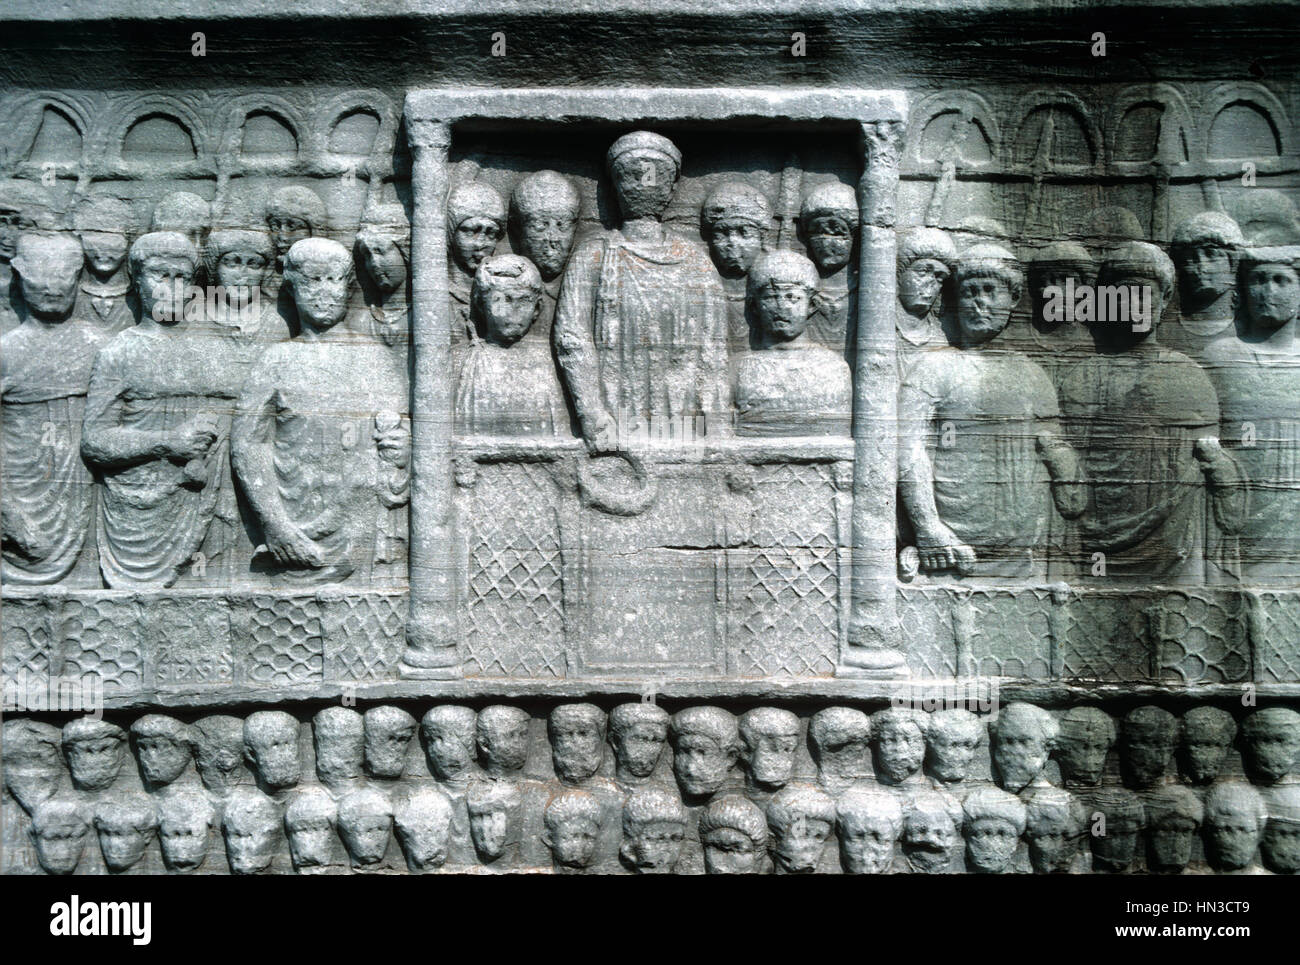 Relief Schnitzen von byzantinischen Kaiser Theodosius I oder Theodosius der große, krönen Sieger an der Basis des ägyptischen Obelisken in den Hippodrom, Stadtteil Sultanahmet, Istanbul, Türkei Stockfoto